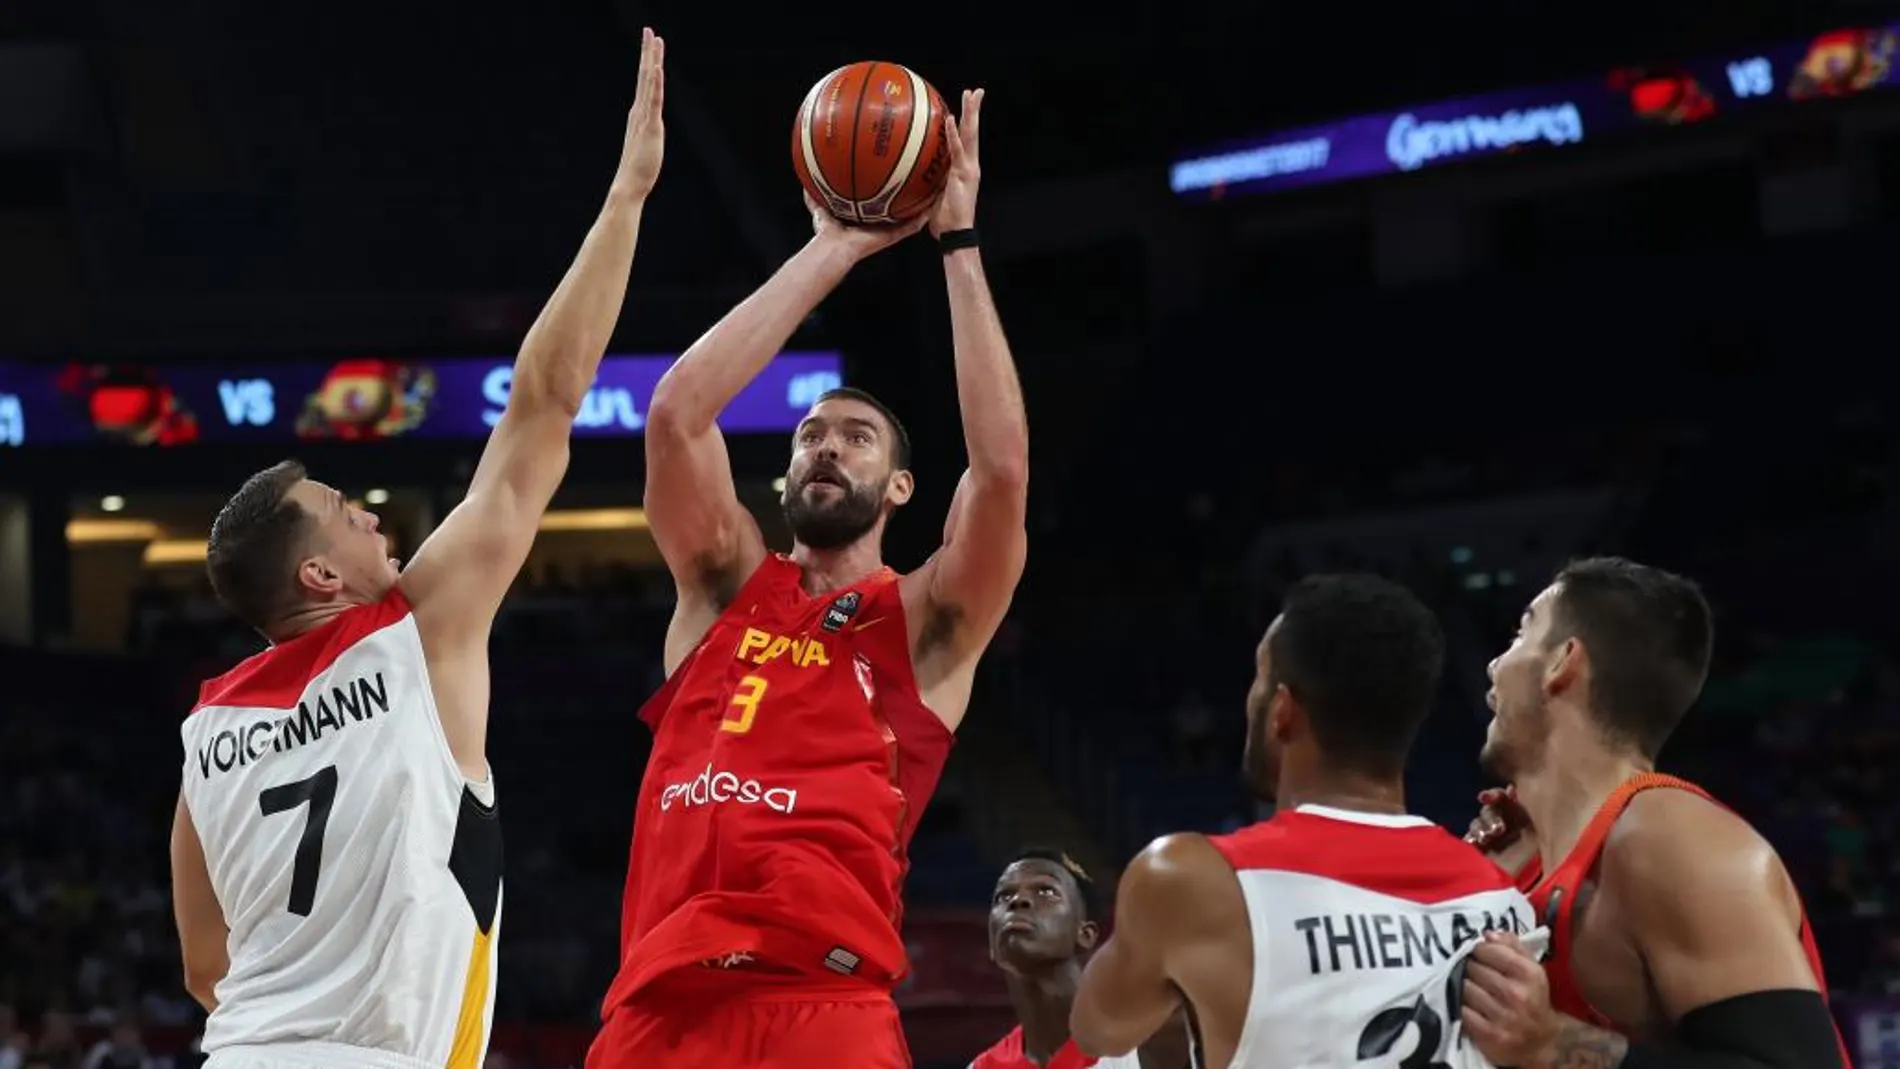 El pívot alemán Johannes Voigtmann defiende el lanzamiento del pívot español Marc Gasol durante un encuentro de cuartos de final del Eurobasket 2017